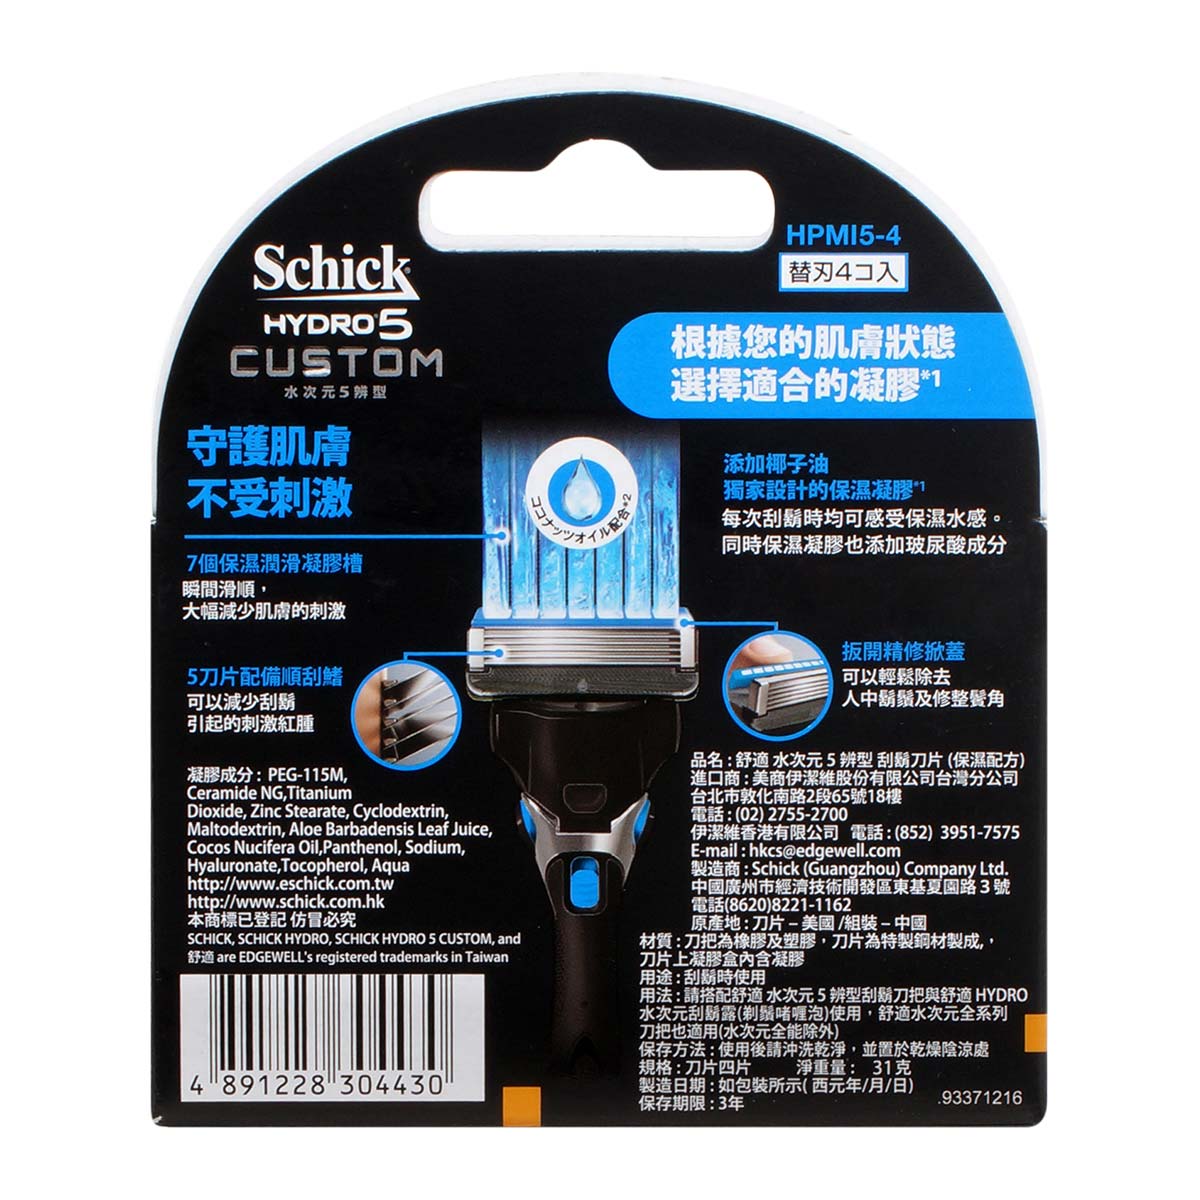 Schick 舒适 Hydro5 Custom 5 辨型补充装刀片 4 片 - 保湿-p_3